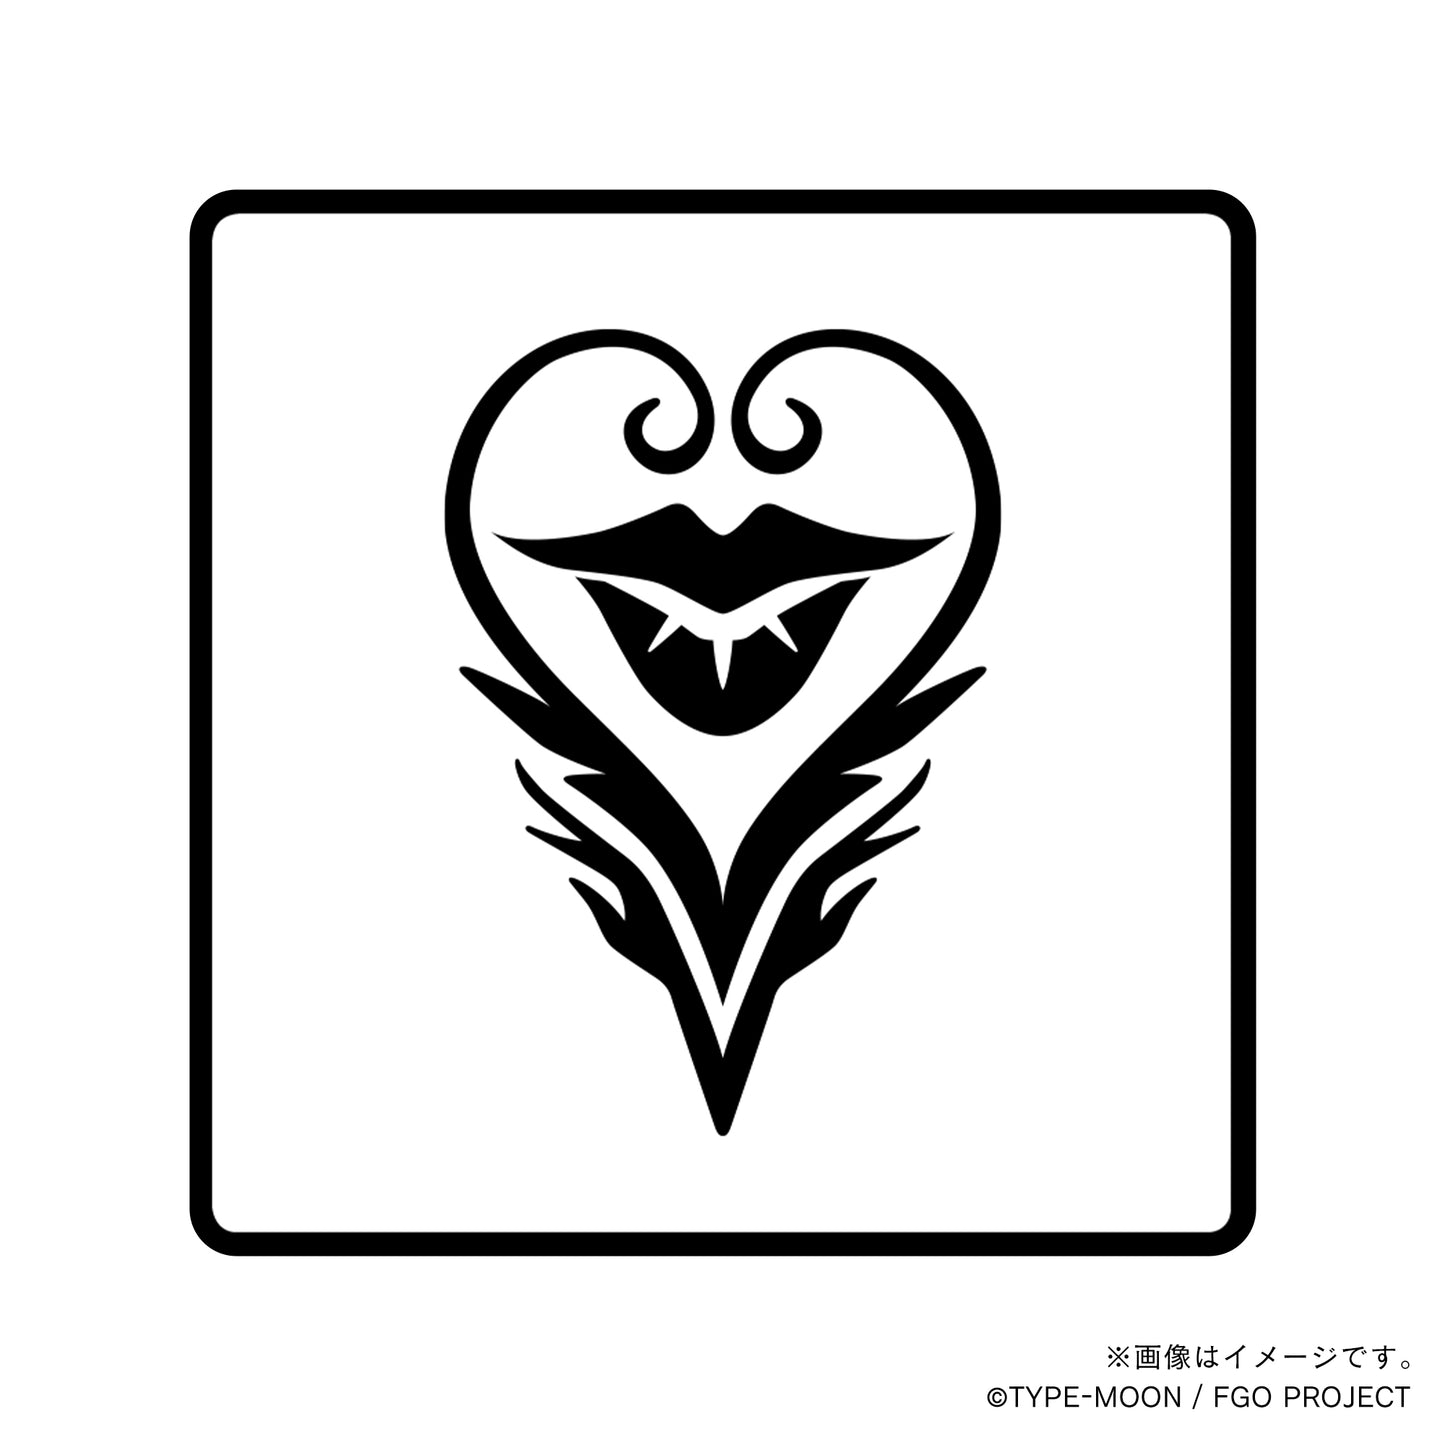 【Fate Grand Order】スカンジナビア・ペペロンチーノ・丸印18mm&角印21mm